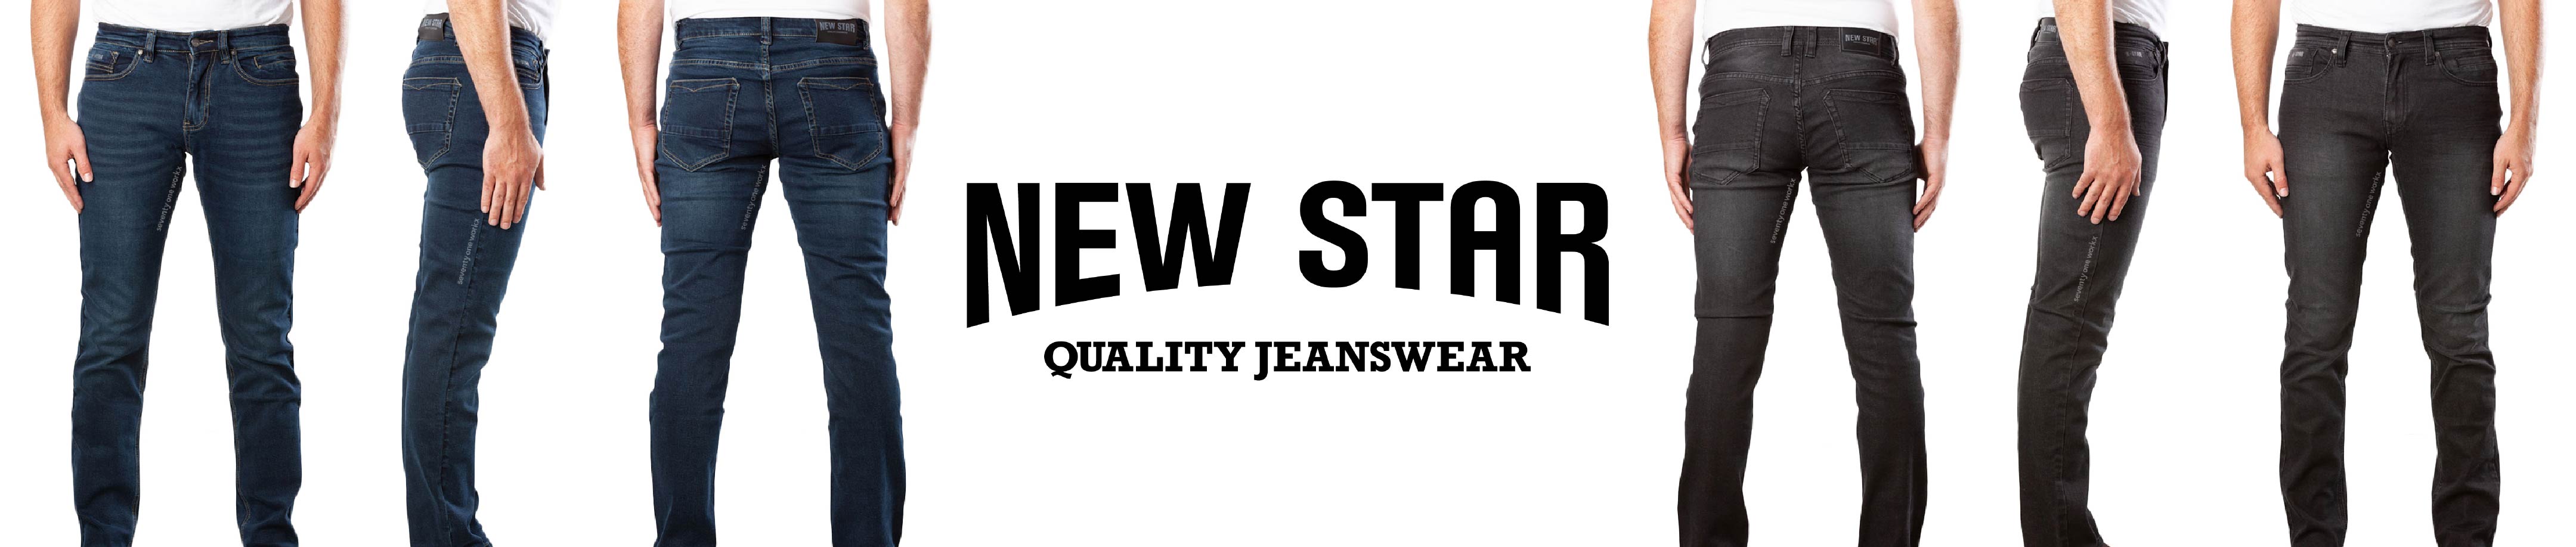 New Star jeanswear